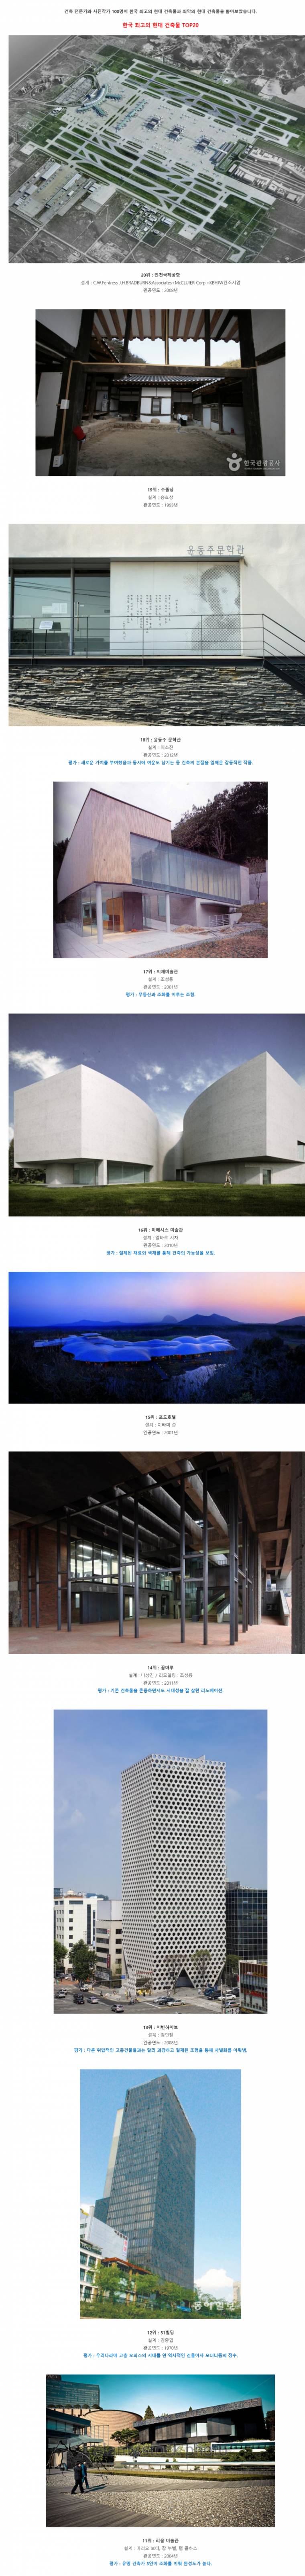  한국 현대건물 베스트&워스트 20